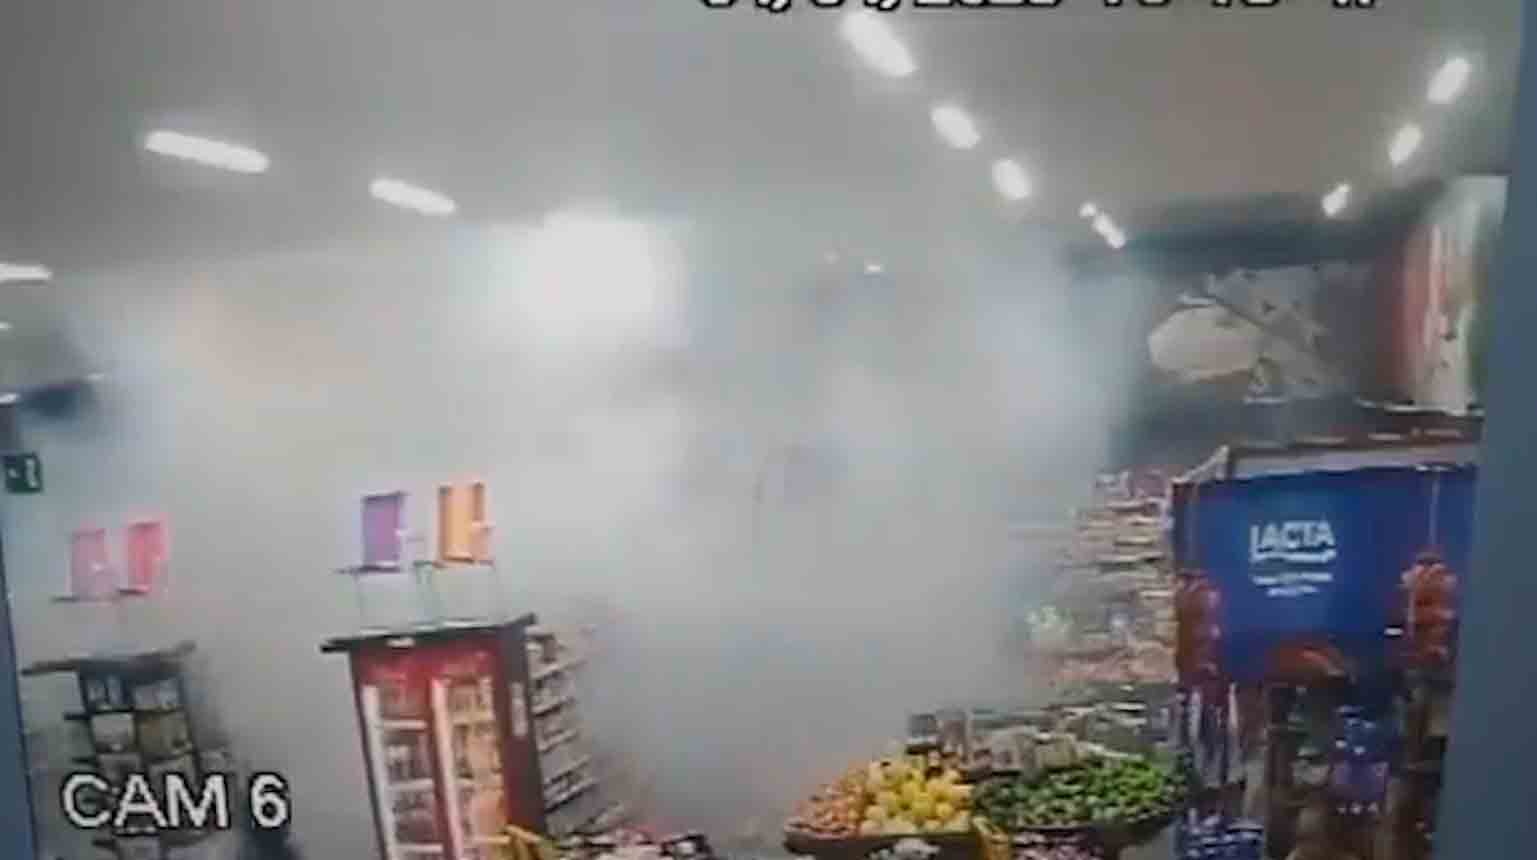 Vídeo: Explosão criminosa em supermercado deixa 3 pessoas feridas no MT